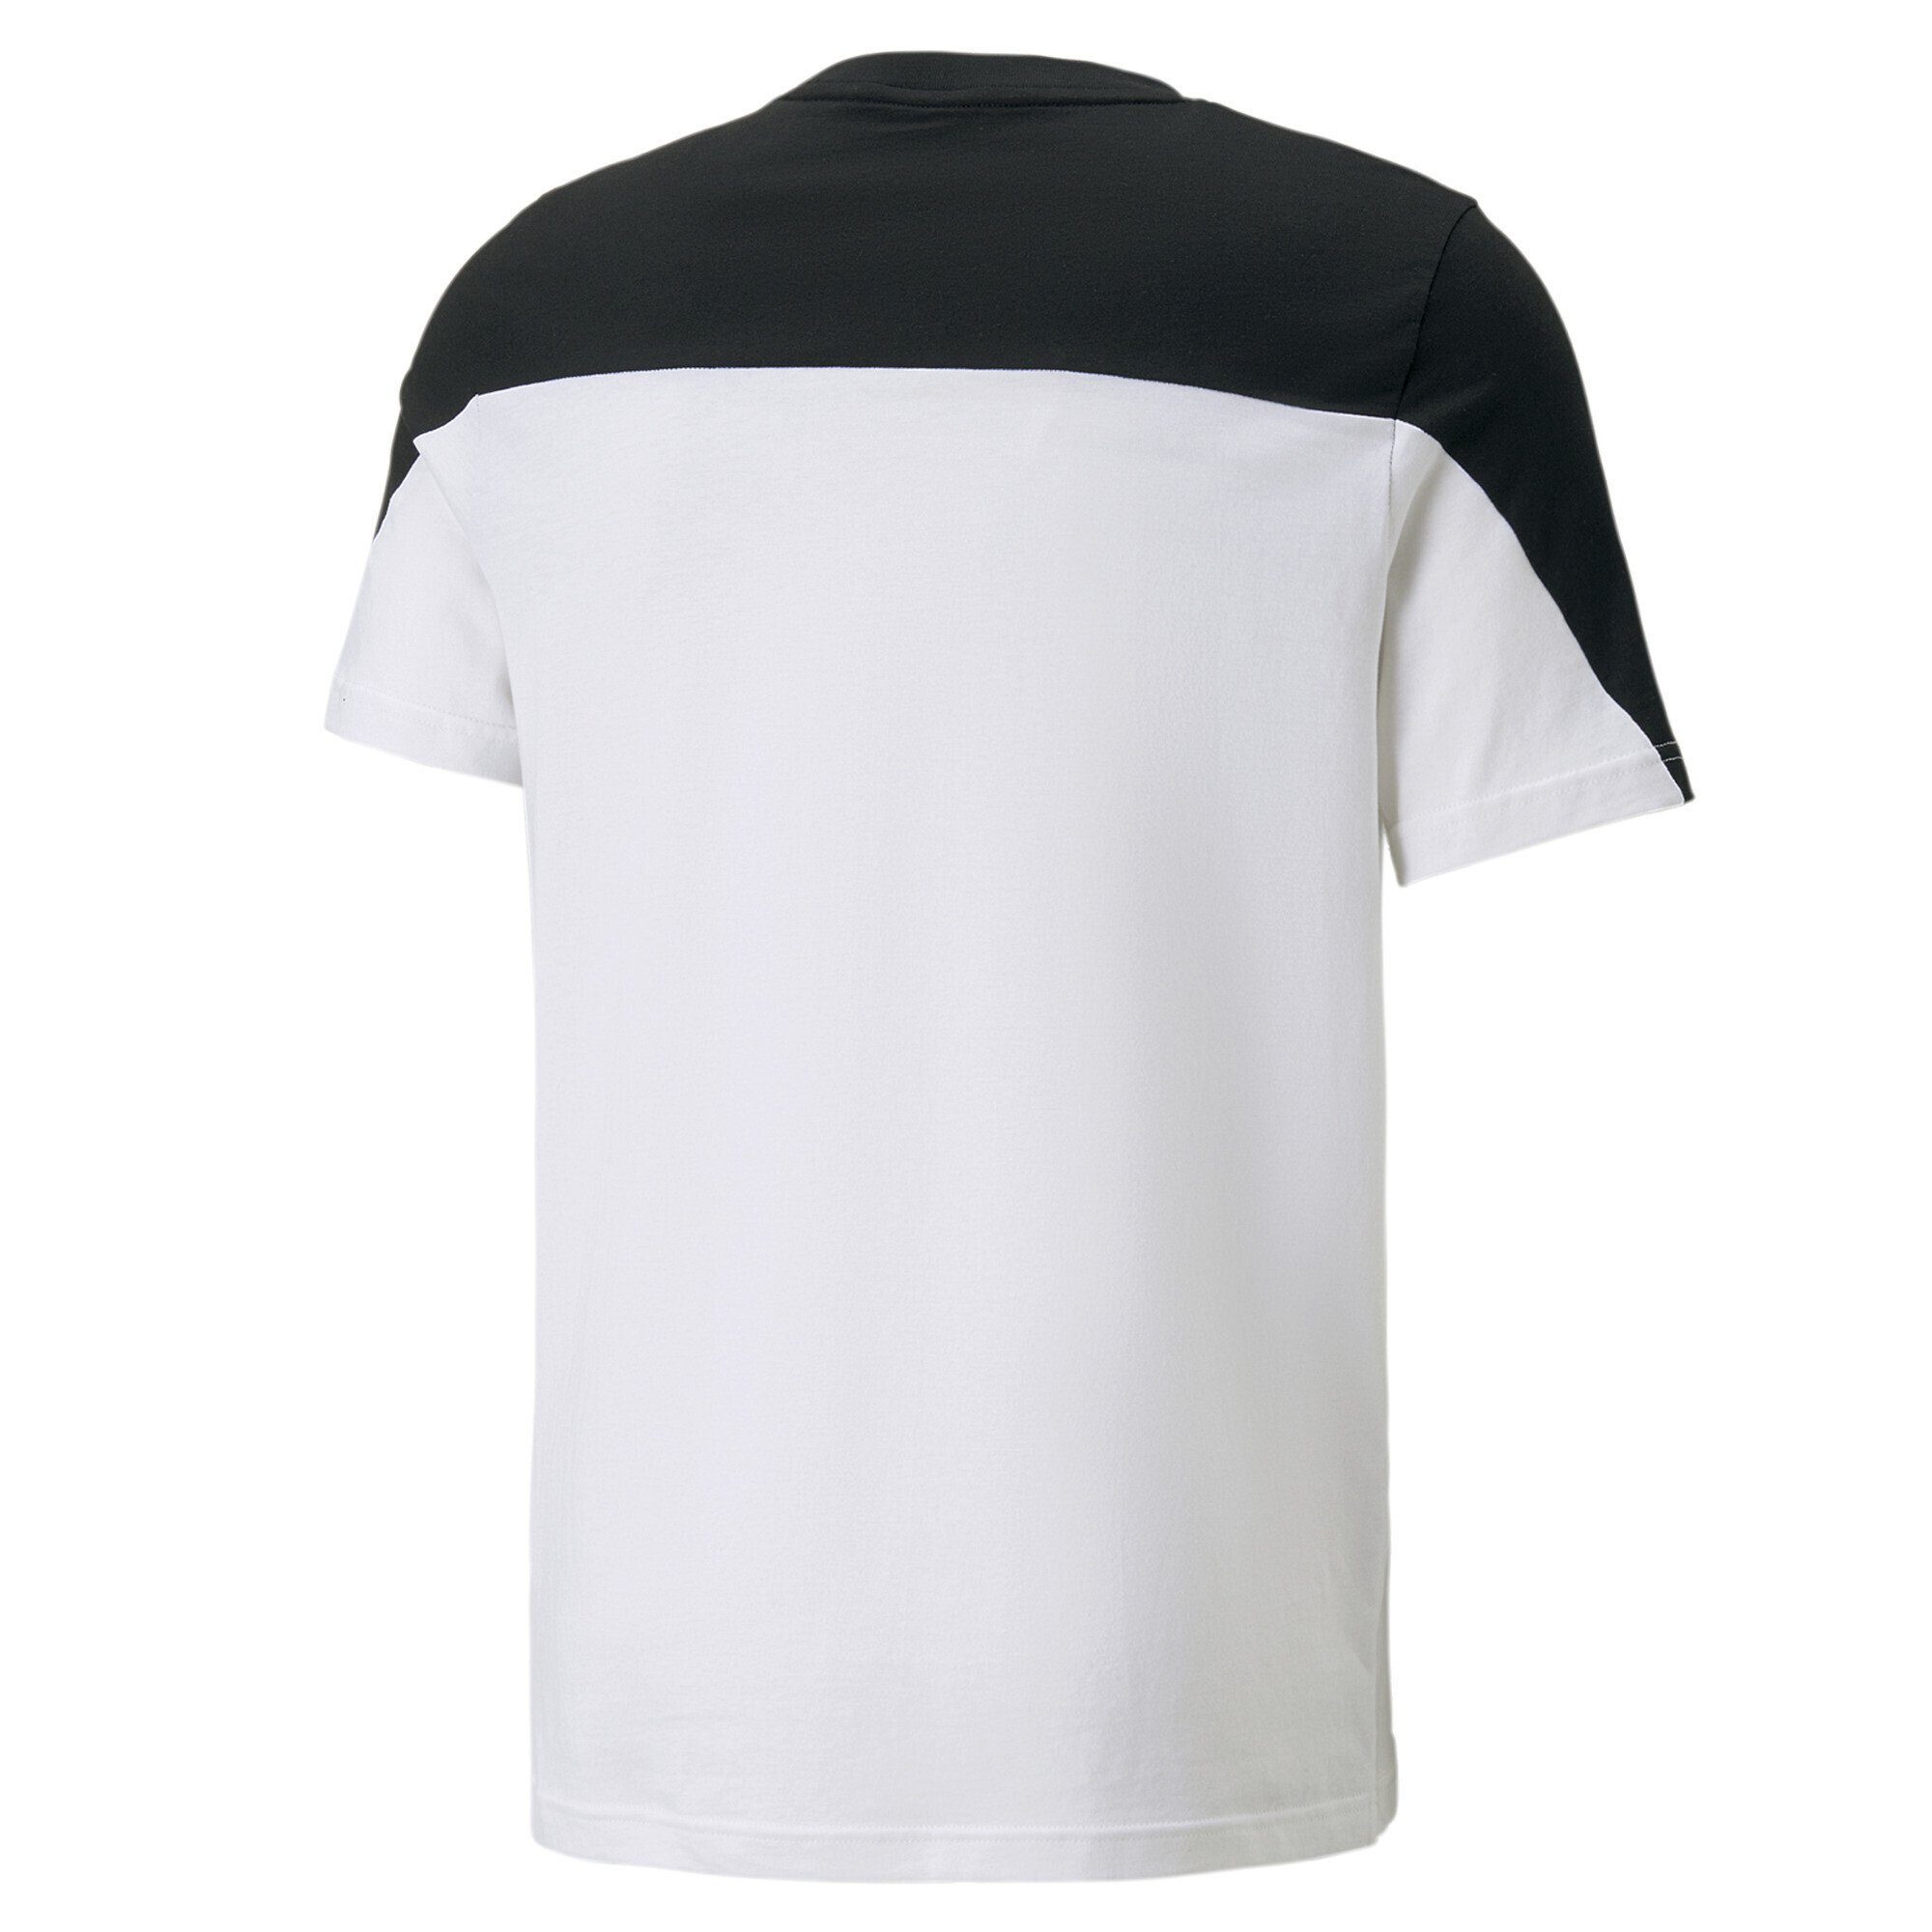 PUMA T-Shirt Around the Block Black T-Shirt Herren White